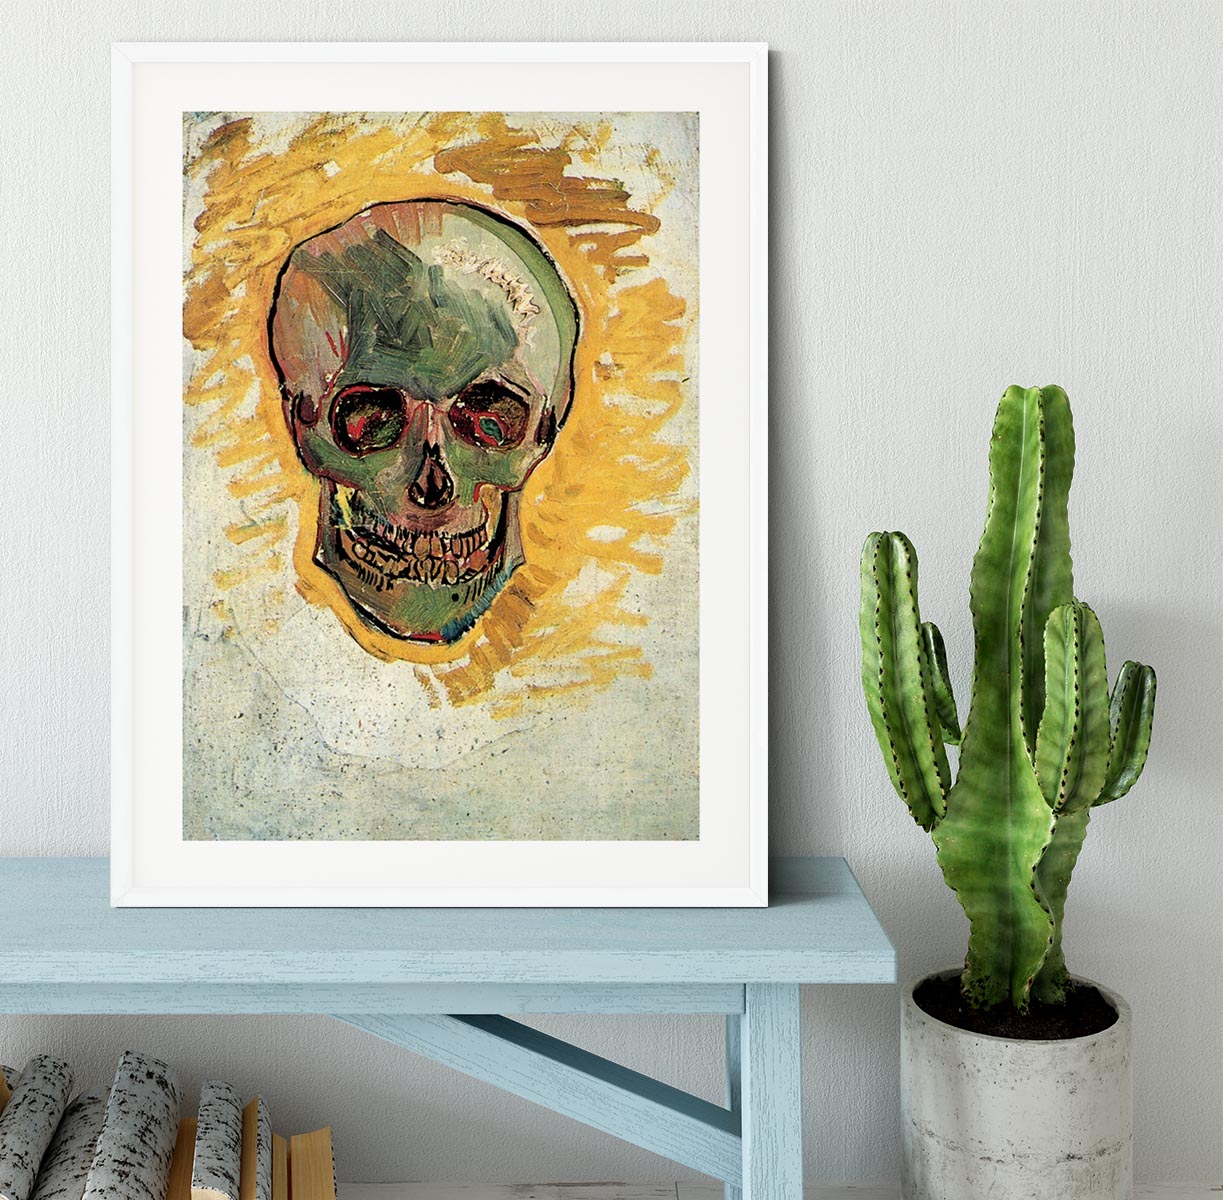 Skull by Van Gogh Framed Print - Canvas Art Rocks - 5